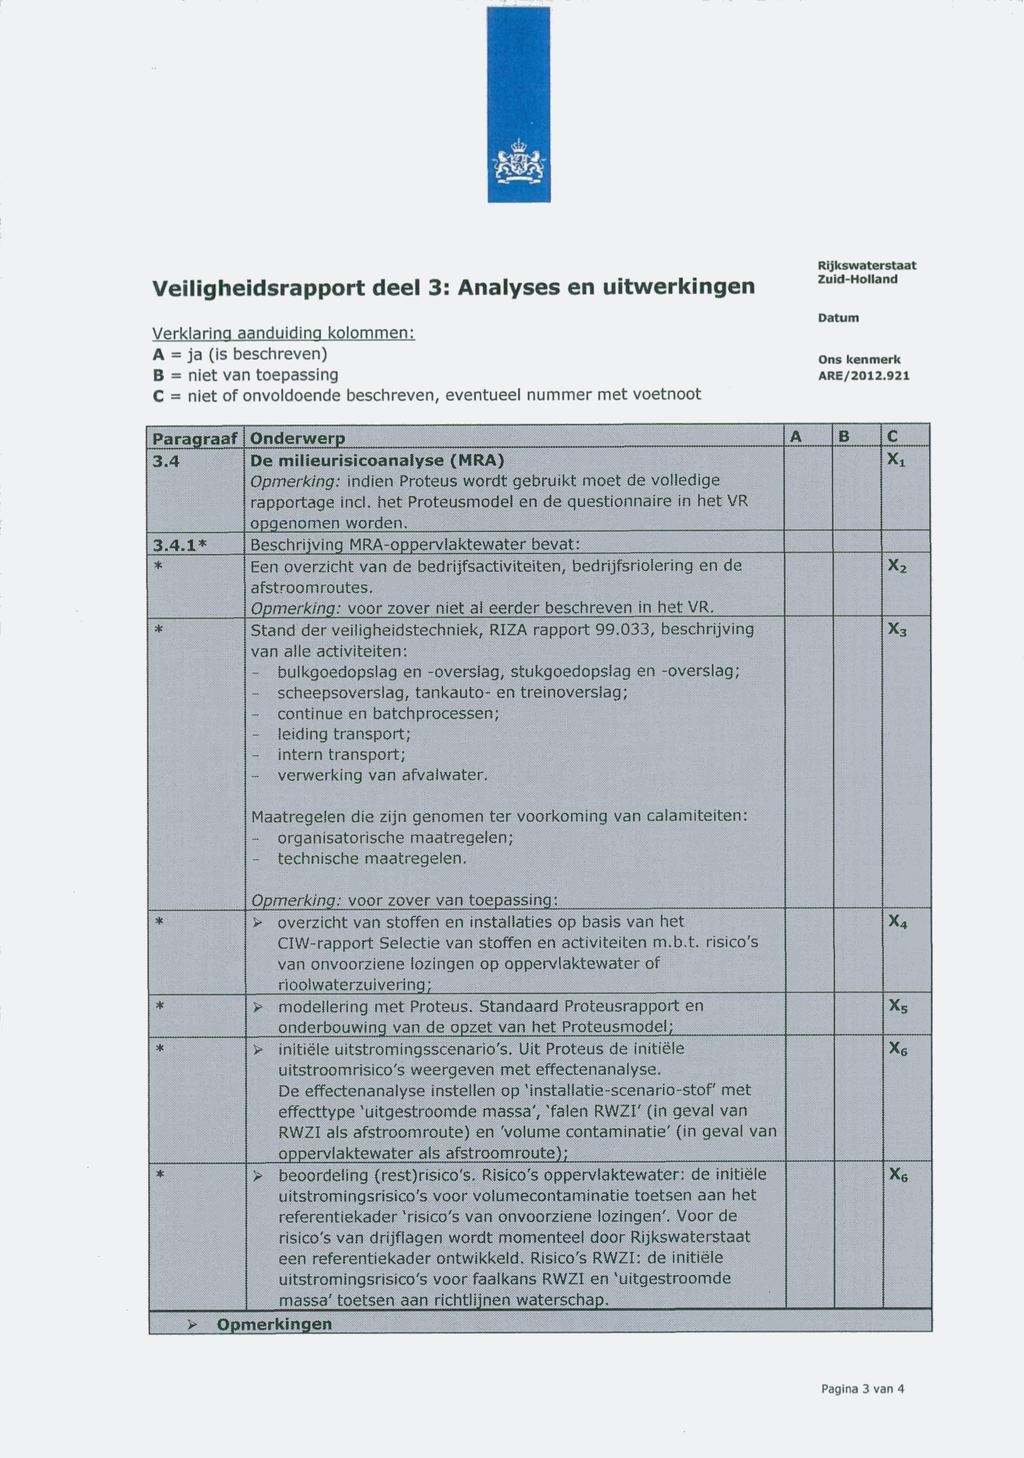 Rijkswaterstaat Zuid-Holland Veiligheidsrapport deei 3: Analyses en uitwerl<ingen Datum Verklaring aanduiding kolommen: A = ja (is beschreven) B = niet van toepassing C = niet of onvoldoende